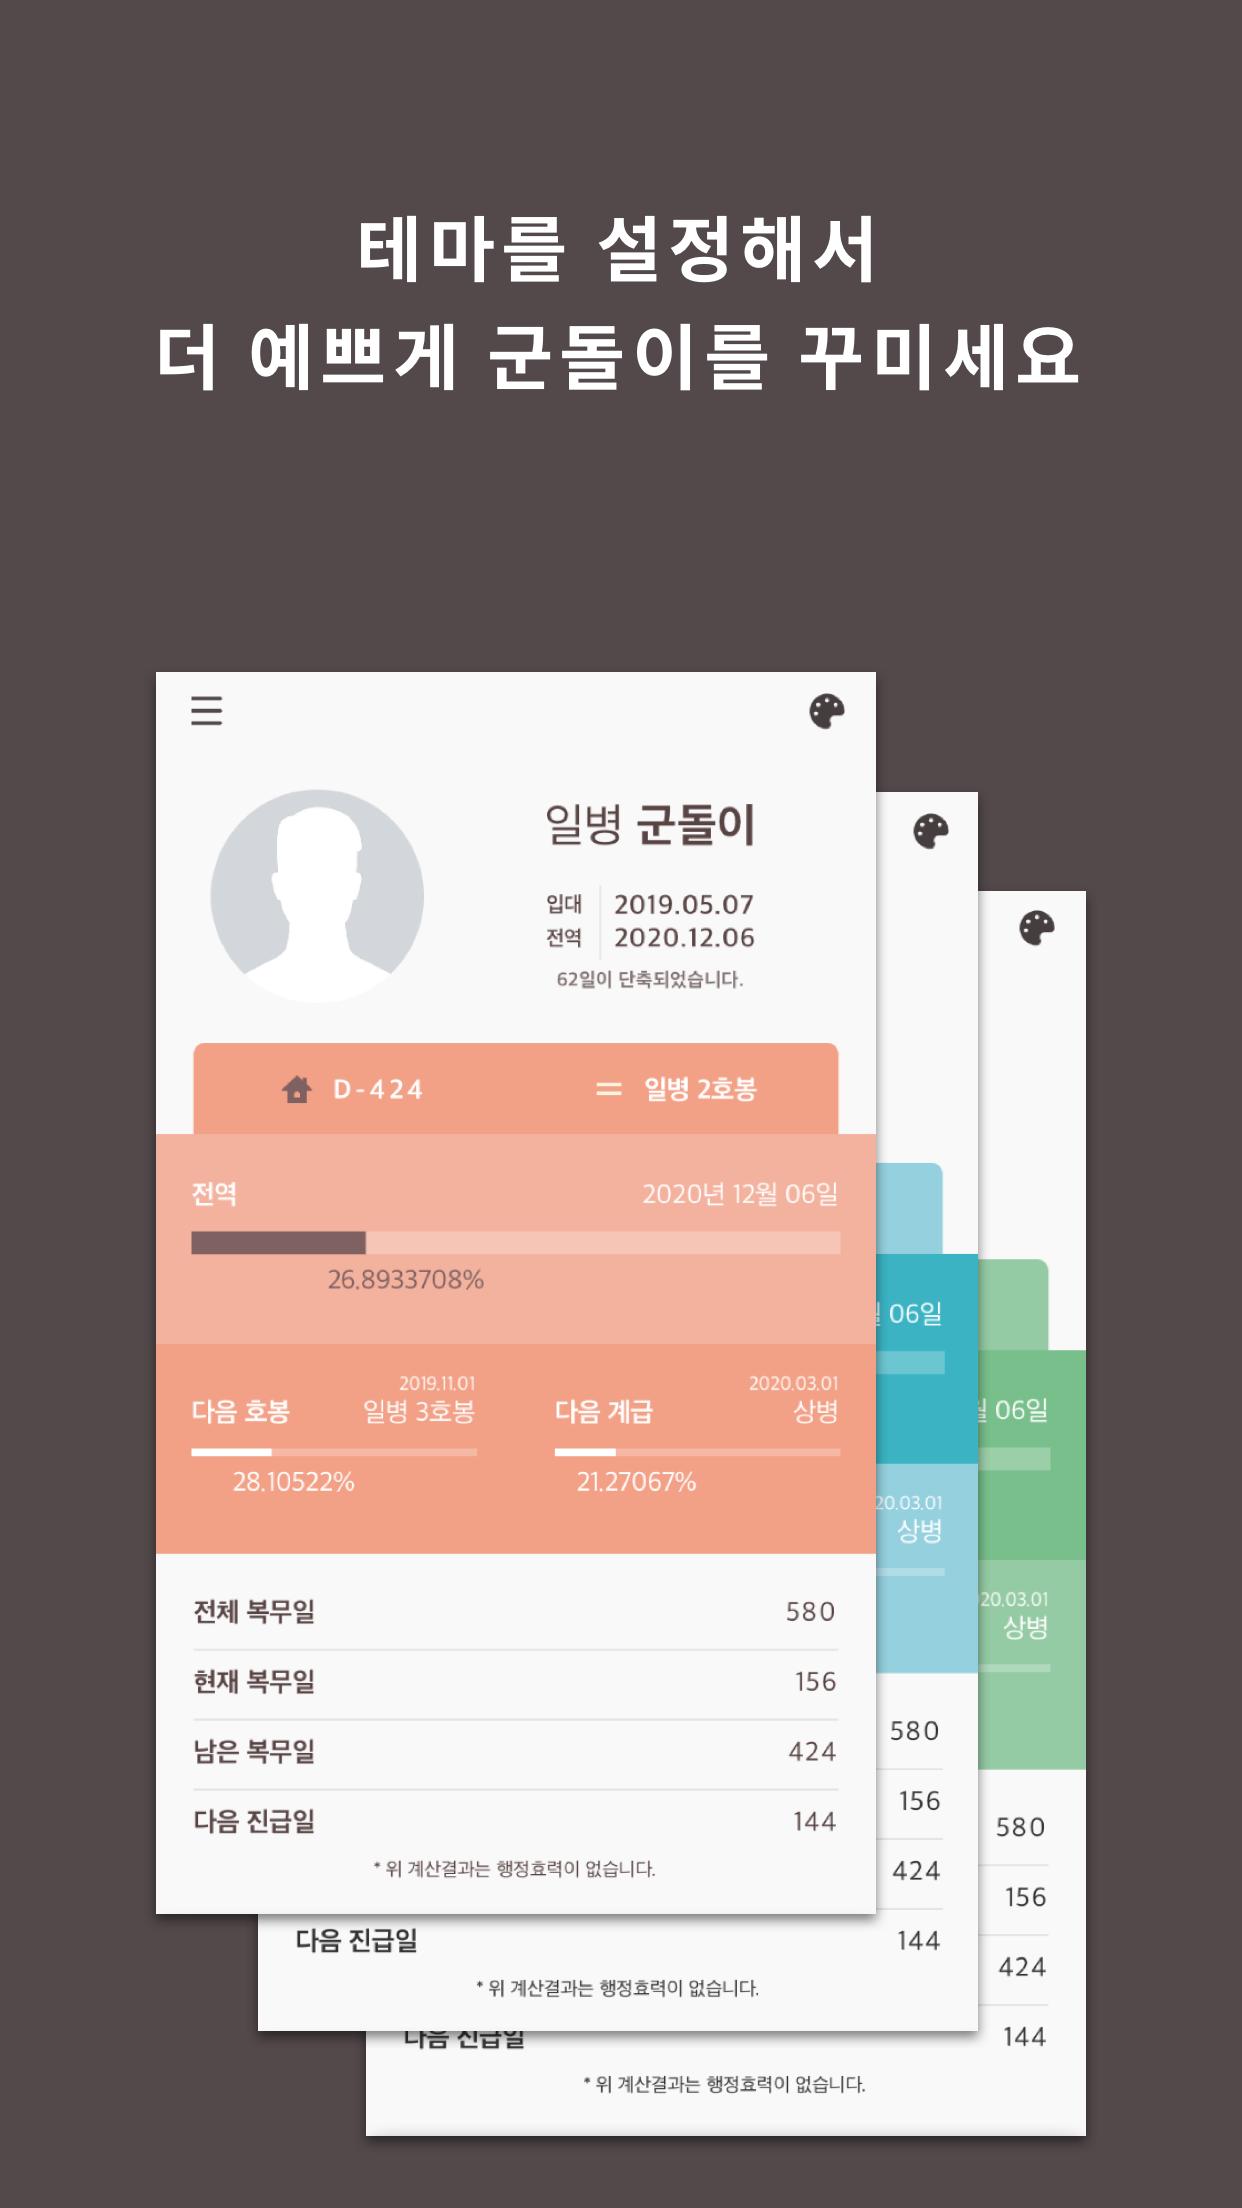 군돌이 - 국민 전역일계산기 앱 Goondori 군대 군인